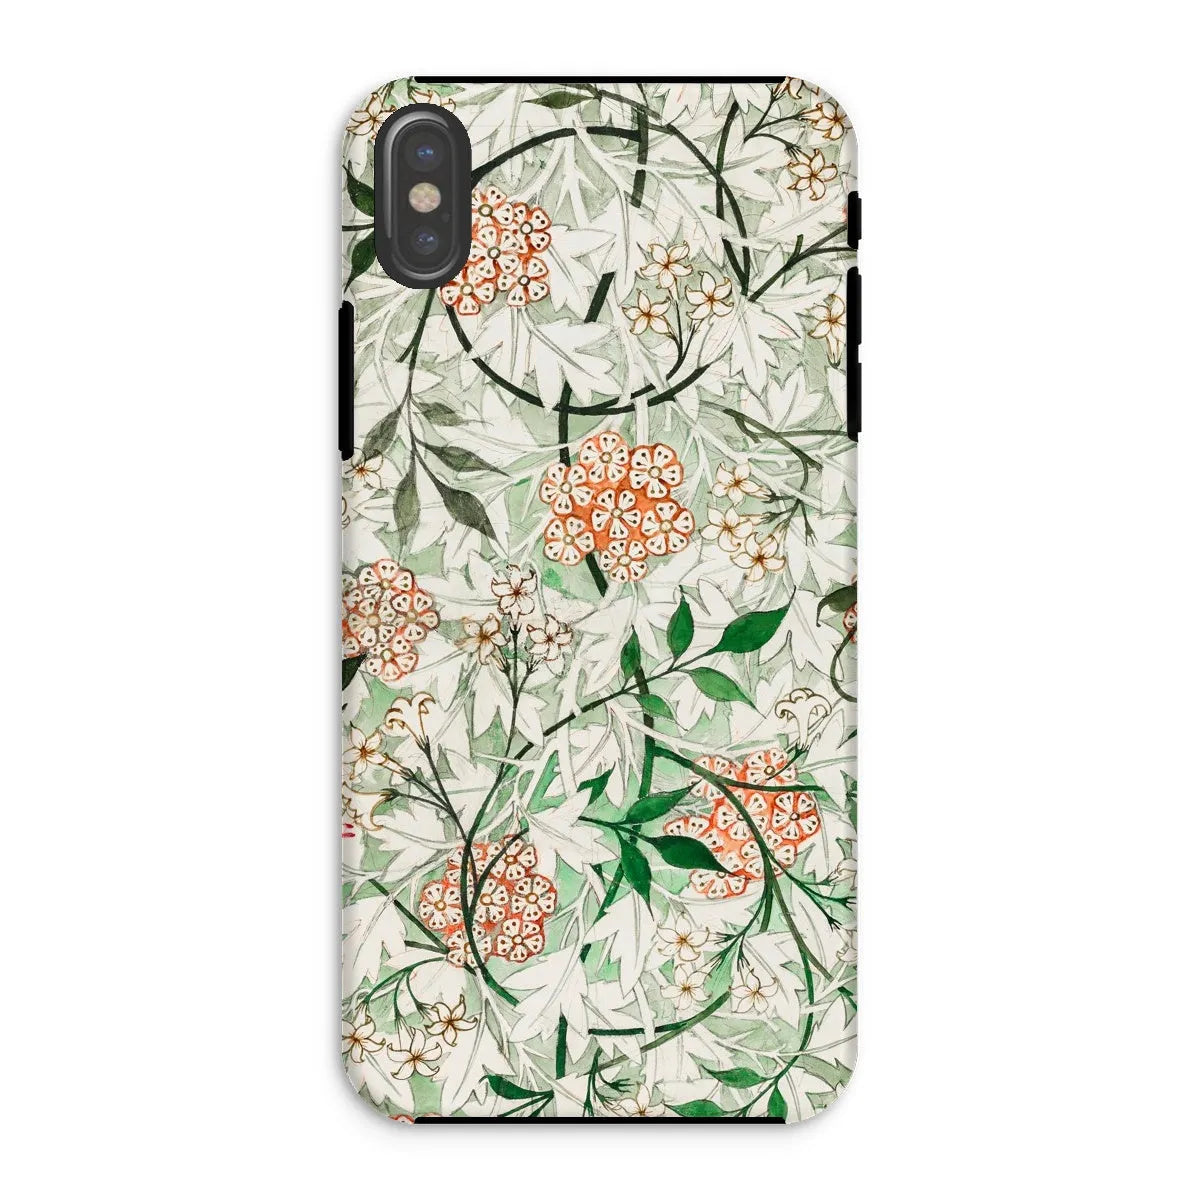 Jasmine Floral Aesthetic Art Phone Case - William Morris - Iphone Xs / Matte - Mobile Phone Cases - Aesthetic Art